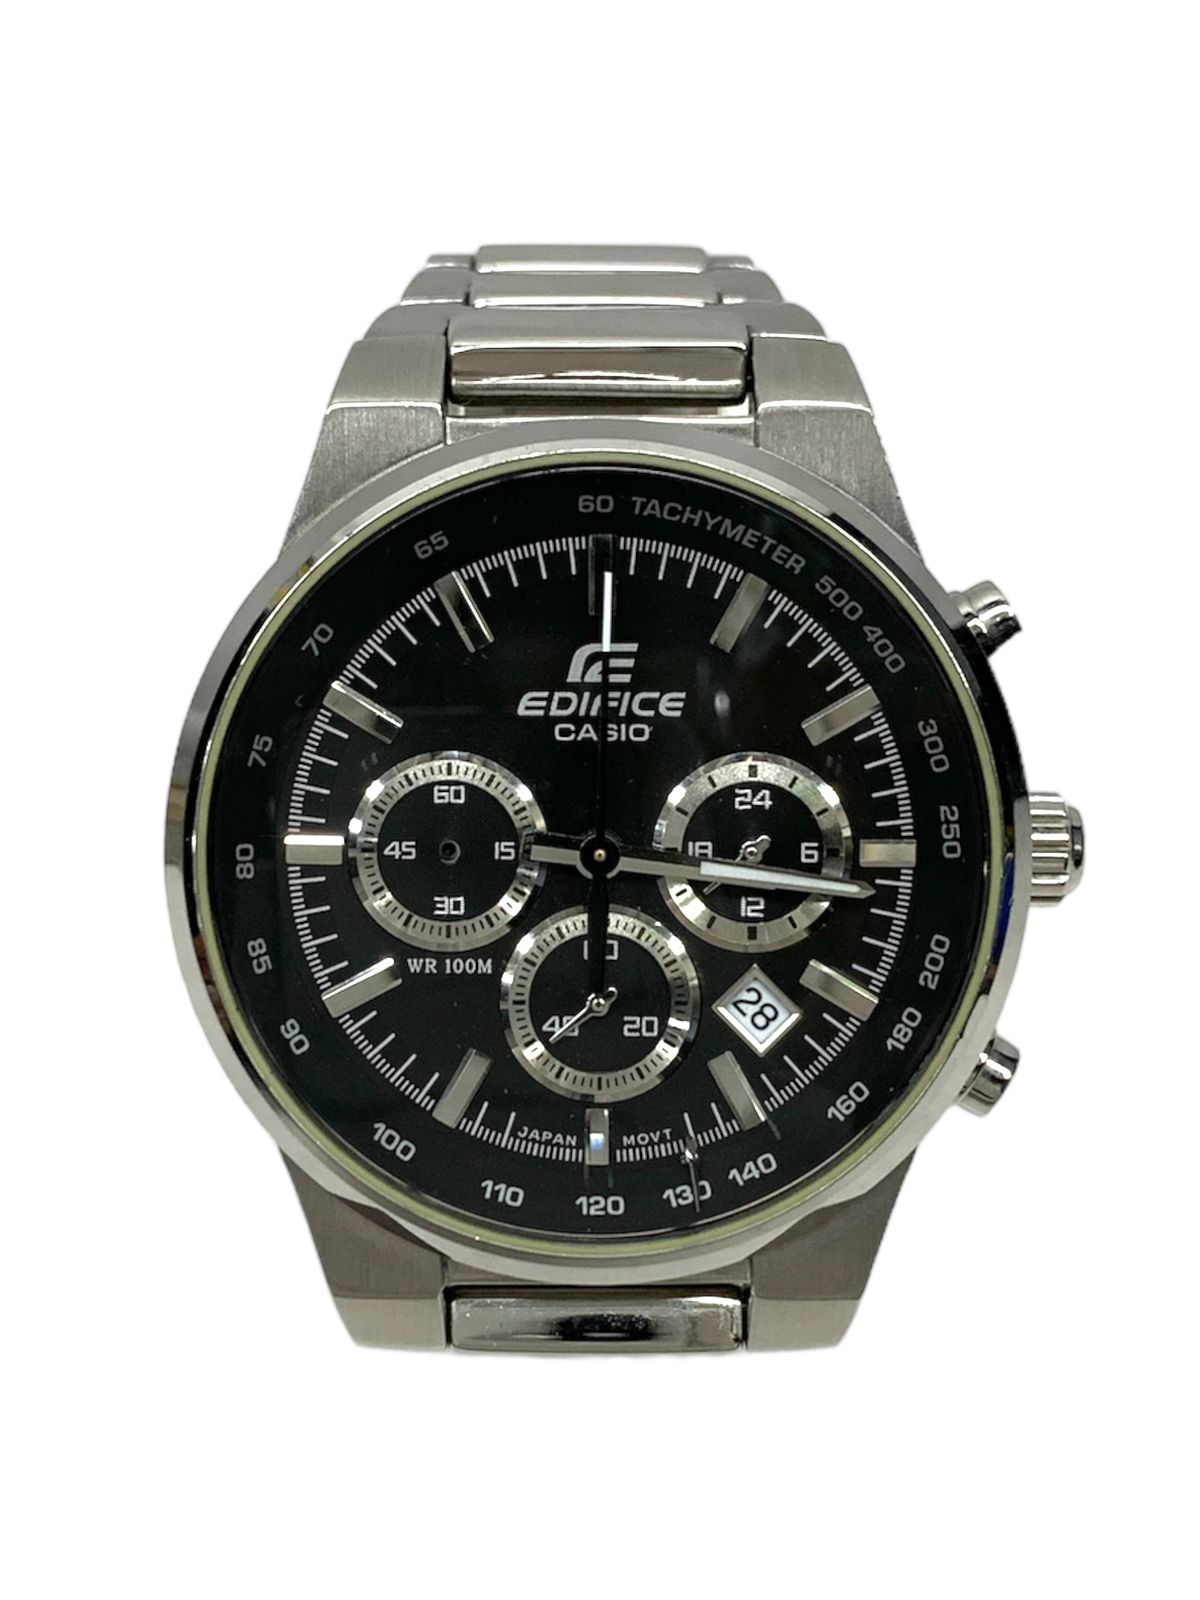 CASIO (カシオ) EDIFICE エディフィス EF-500 腕時計 クロノグラフ シルバー×ブラック メンズ /036